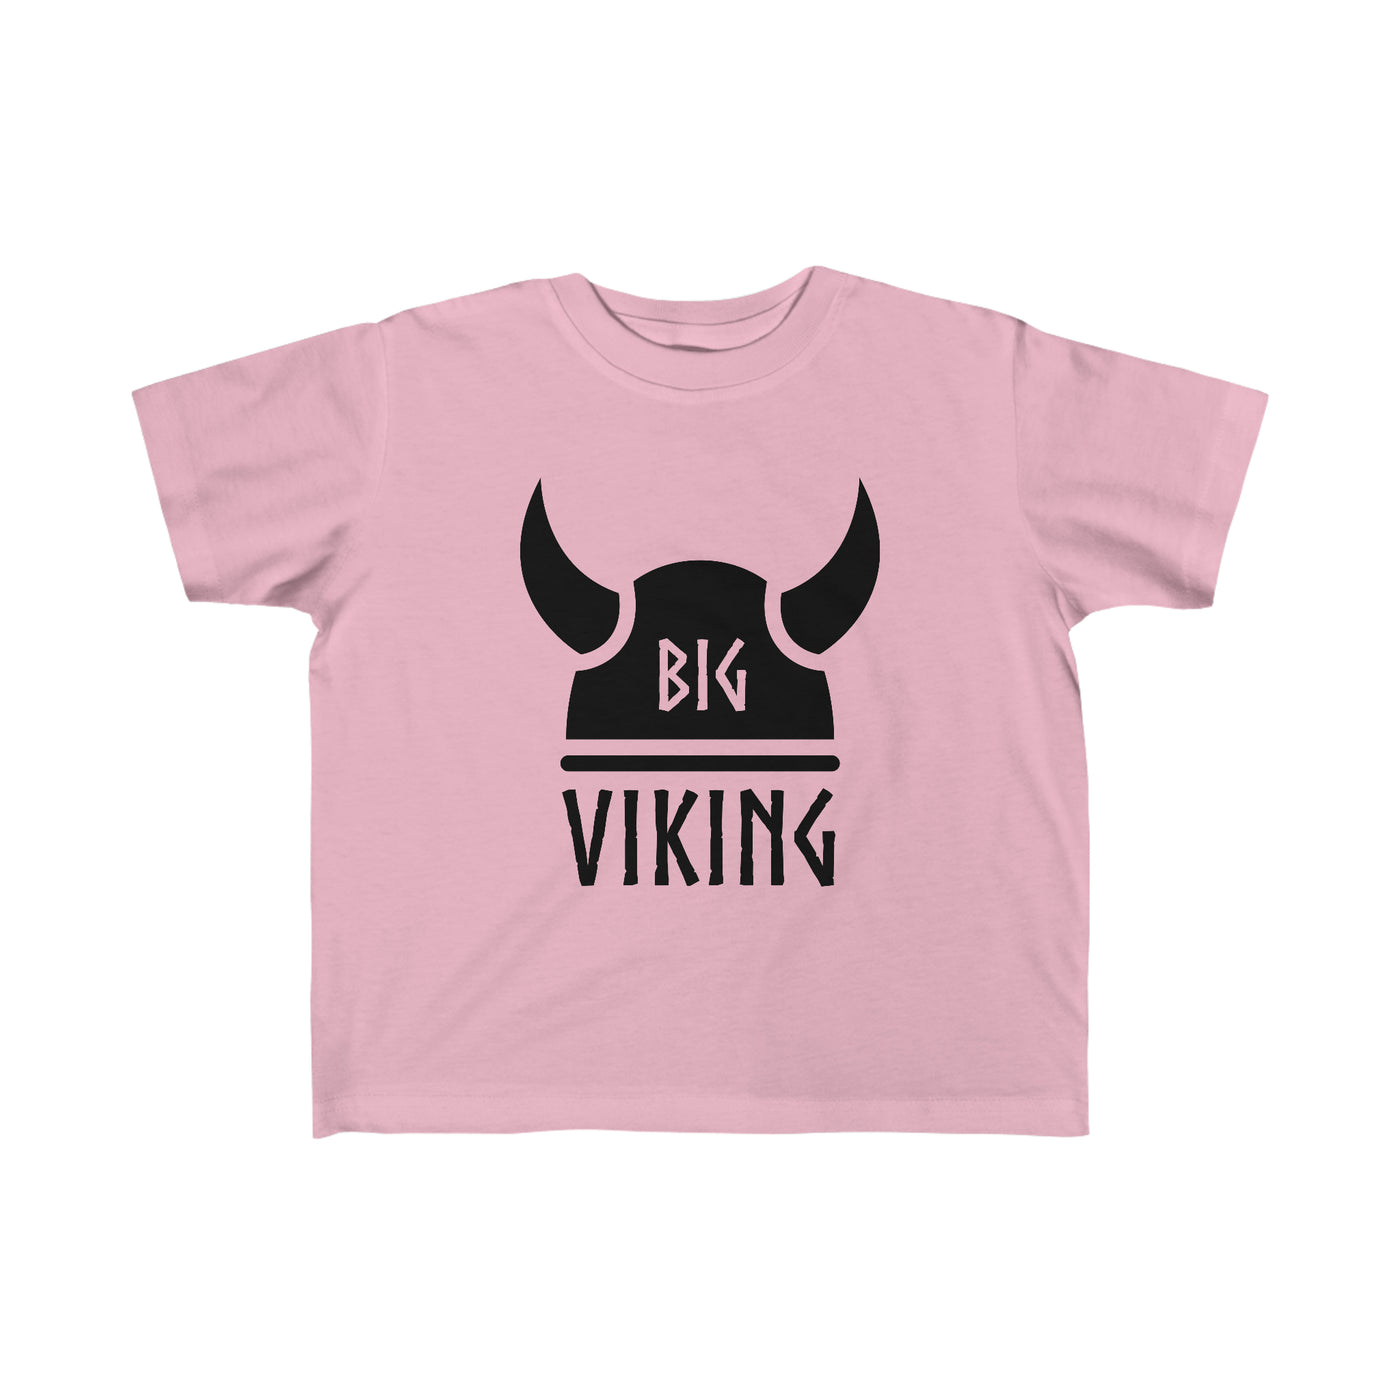 Big Viking Toddler Tee